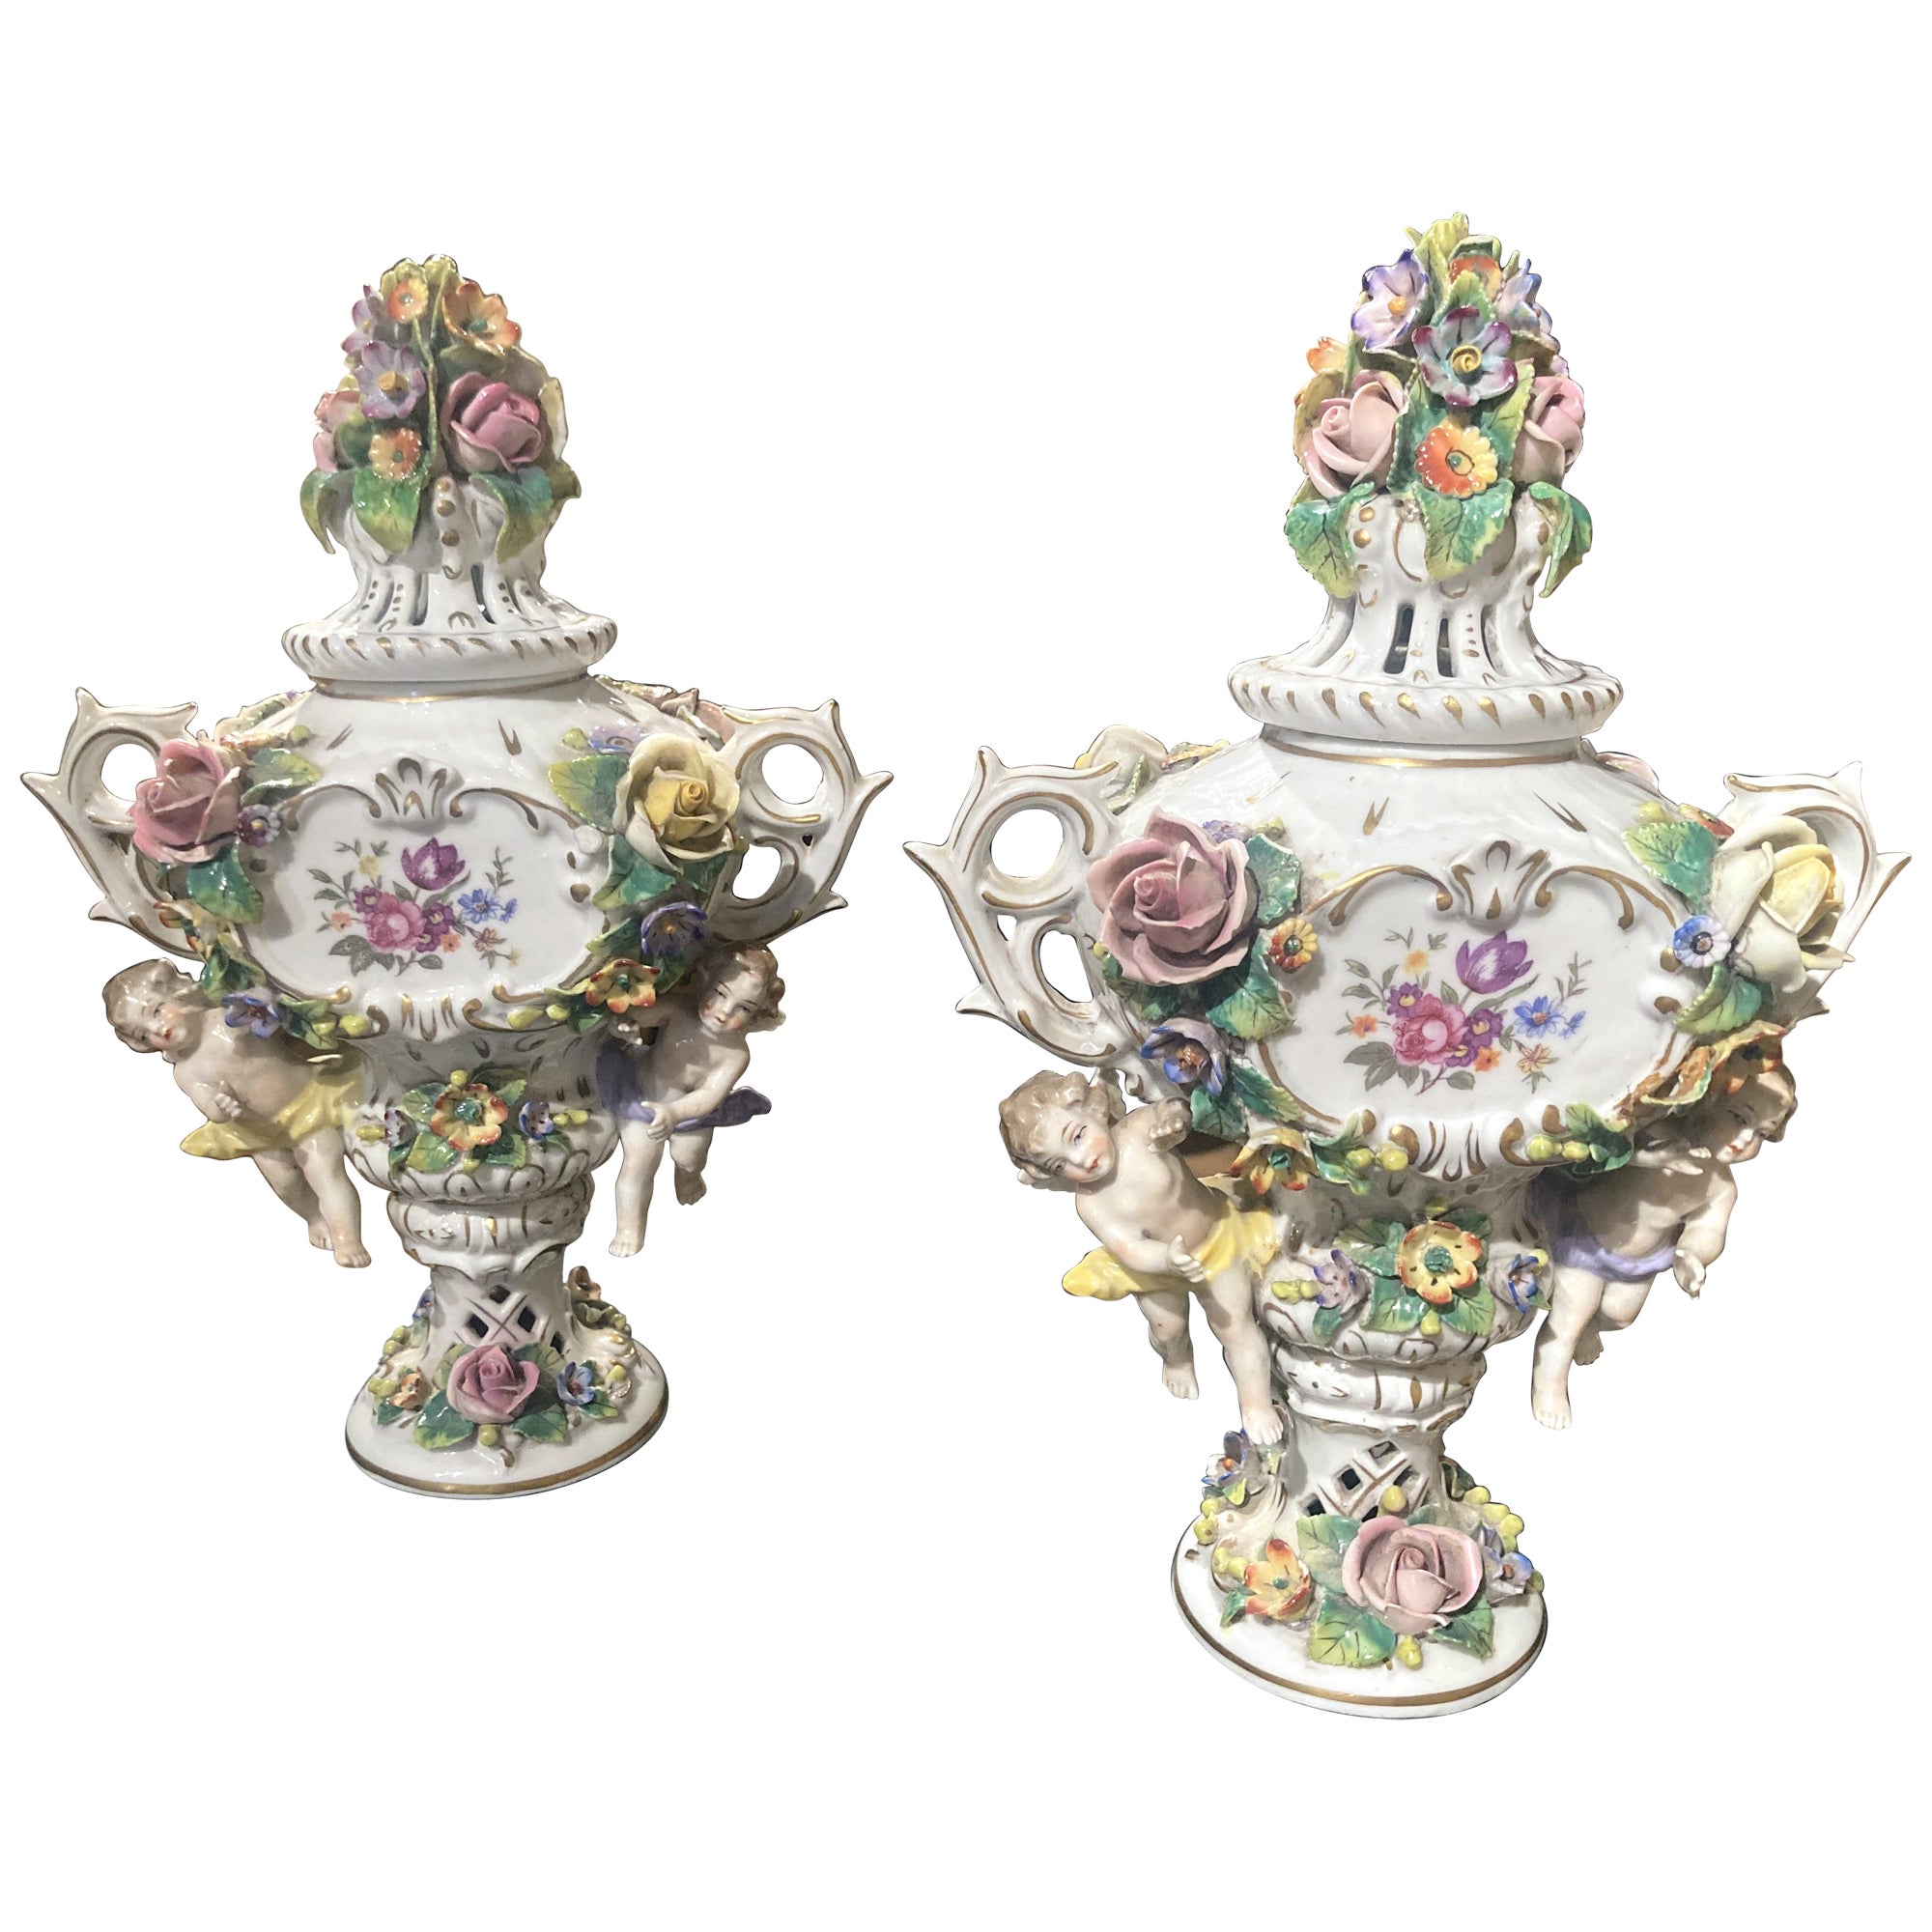 Polychrome Räuchergefäße aus Porzellan mit Blumen aus Capodimonte, 19. Jahrhundert